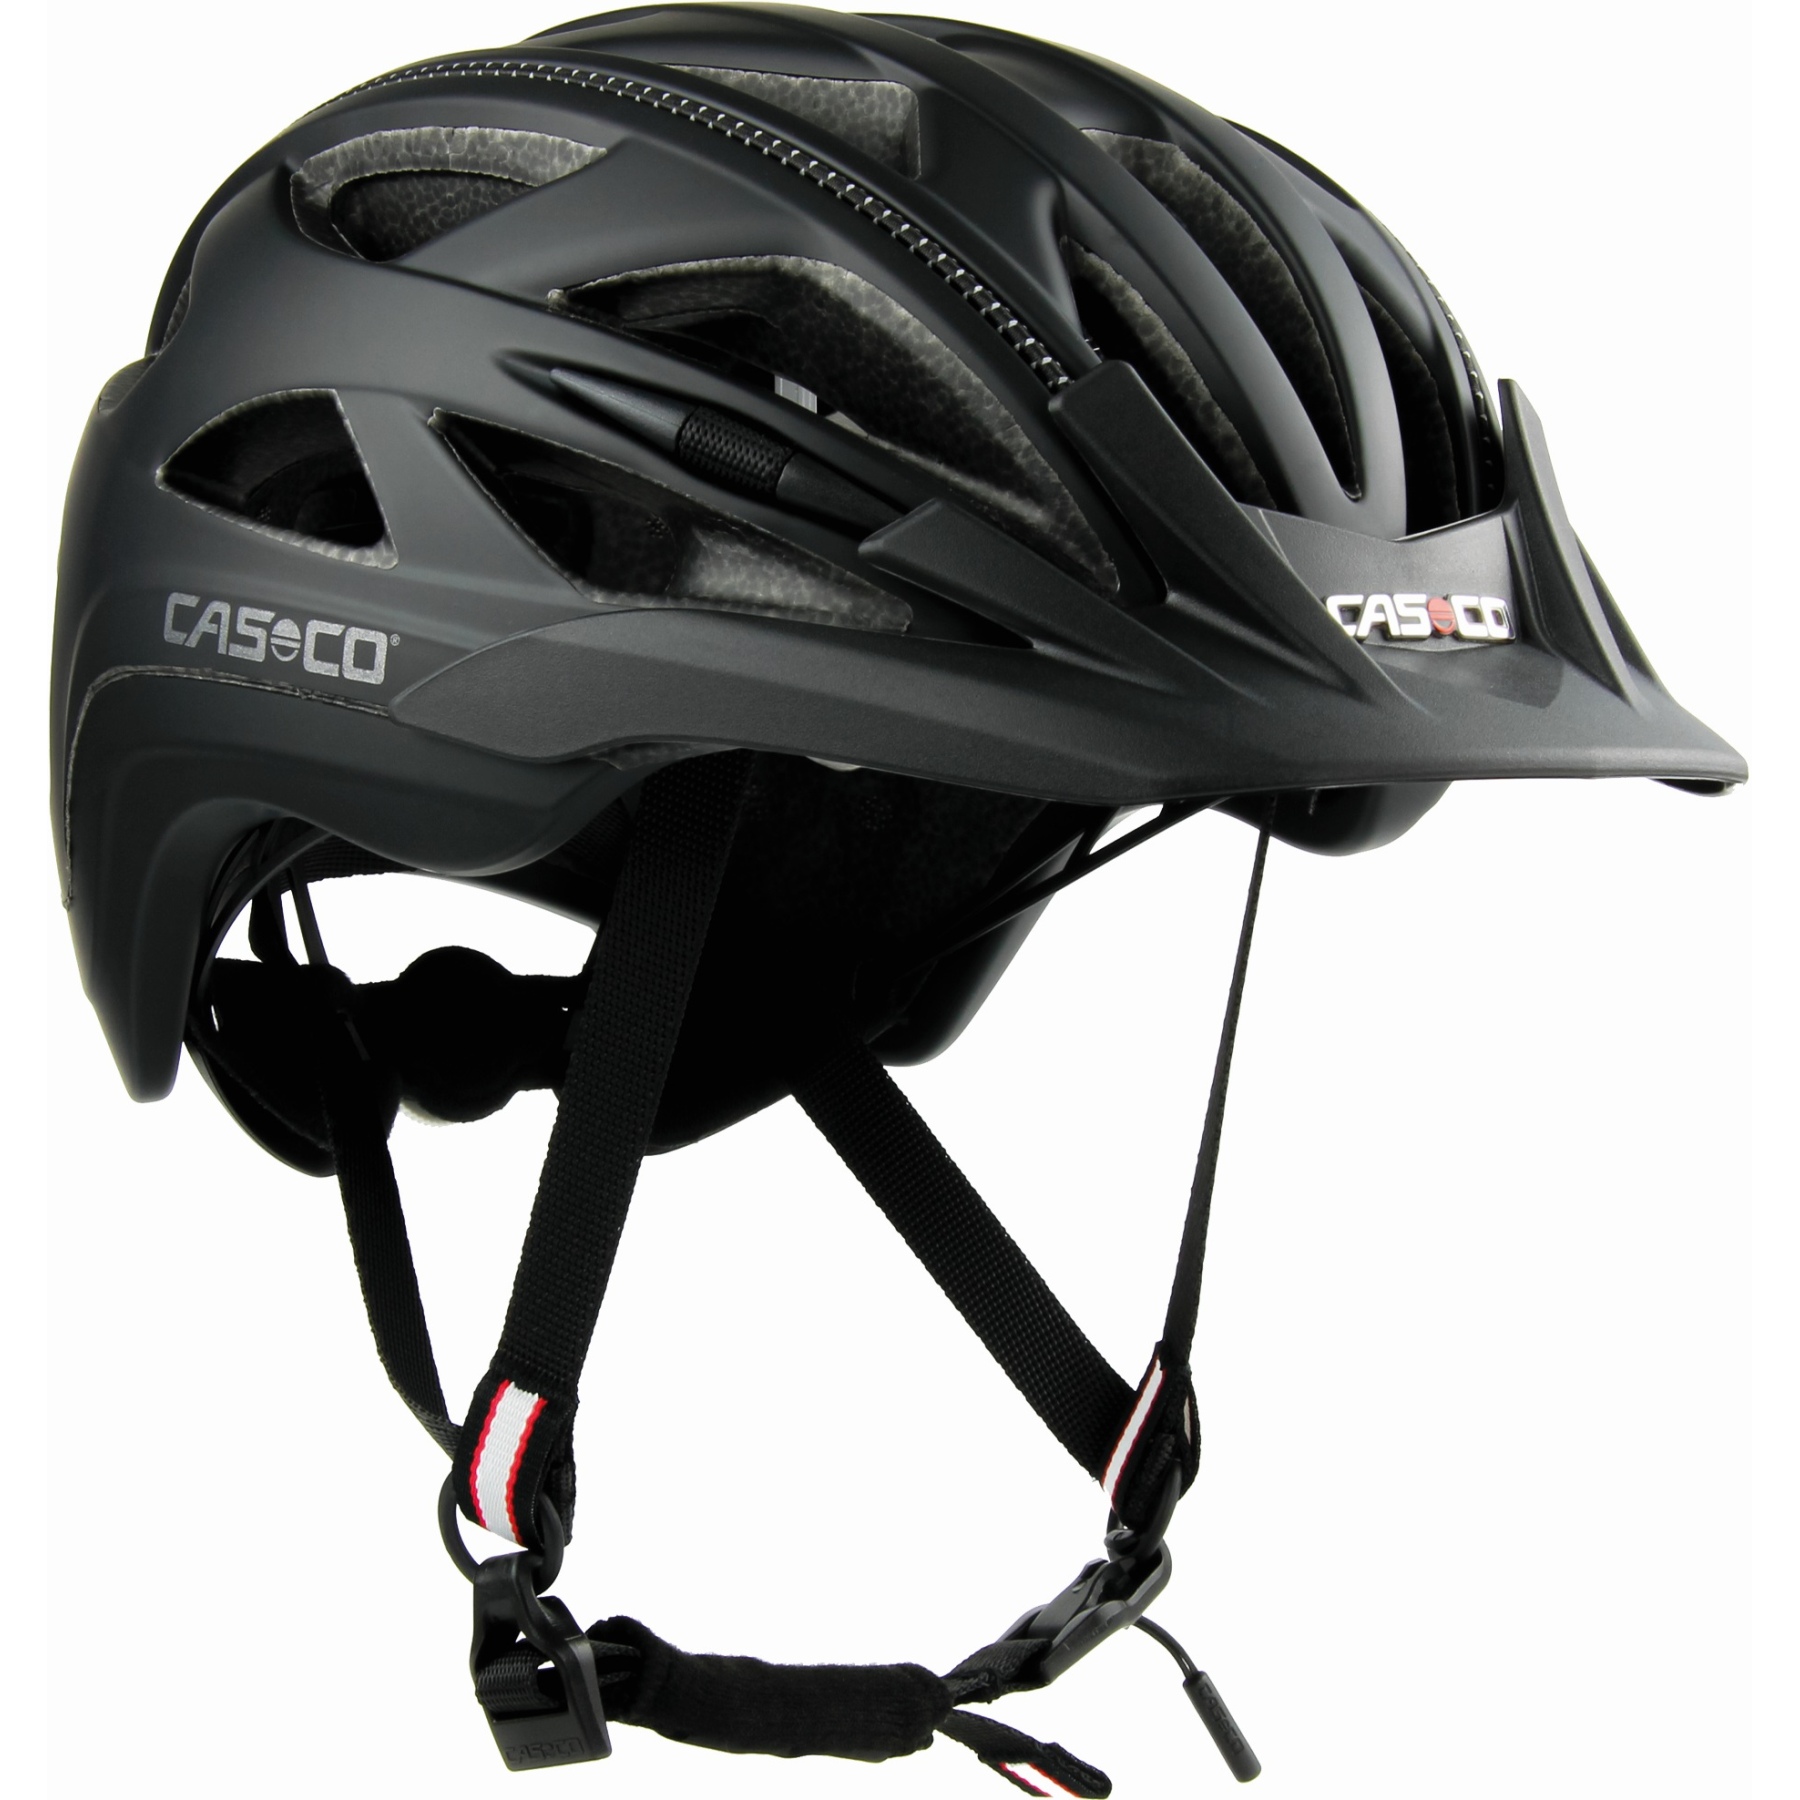 Produktbild von Casco Activ 2 Helm - schwarz matt